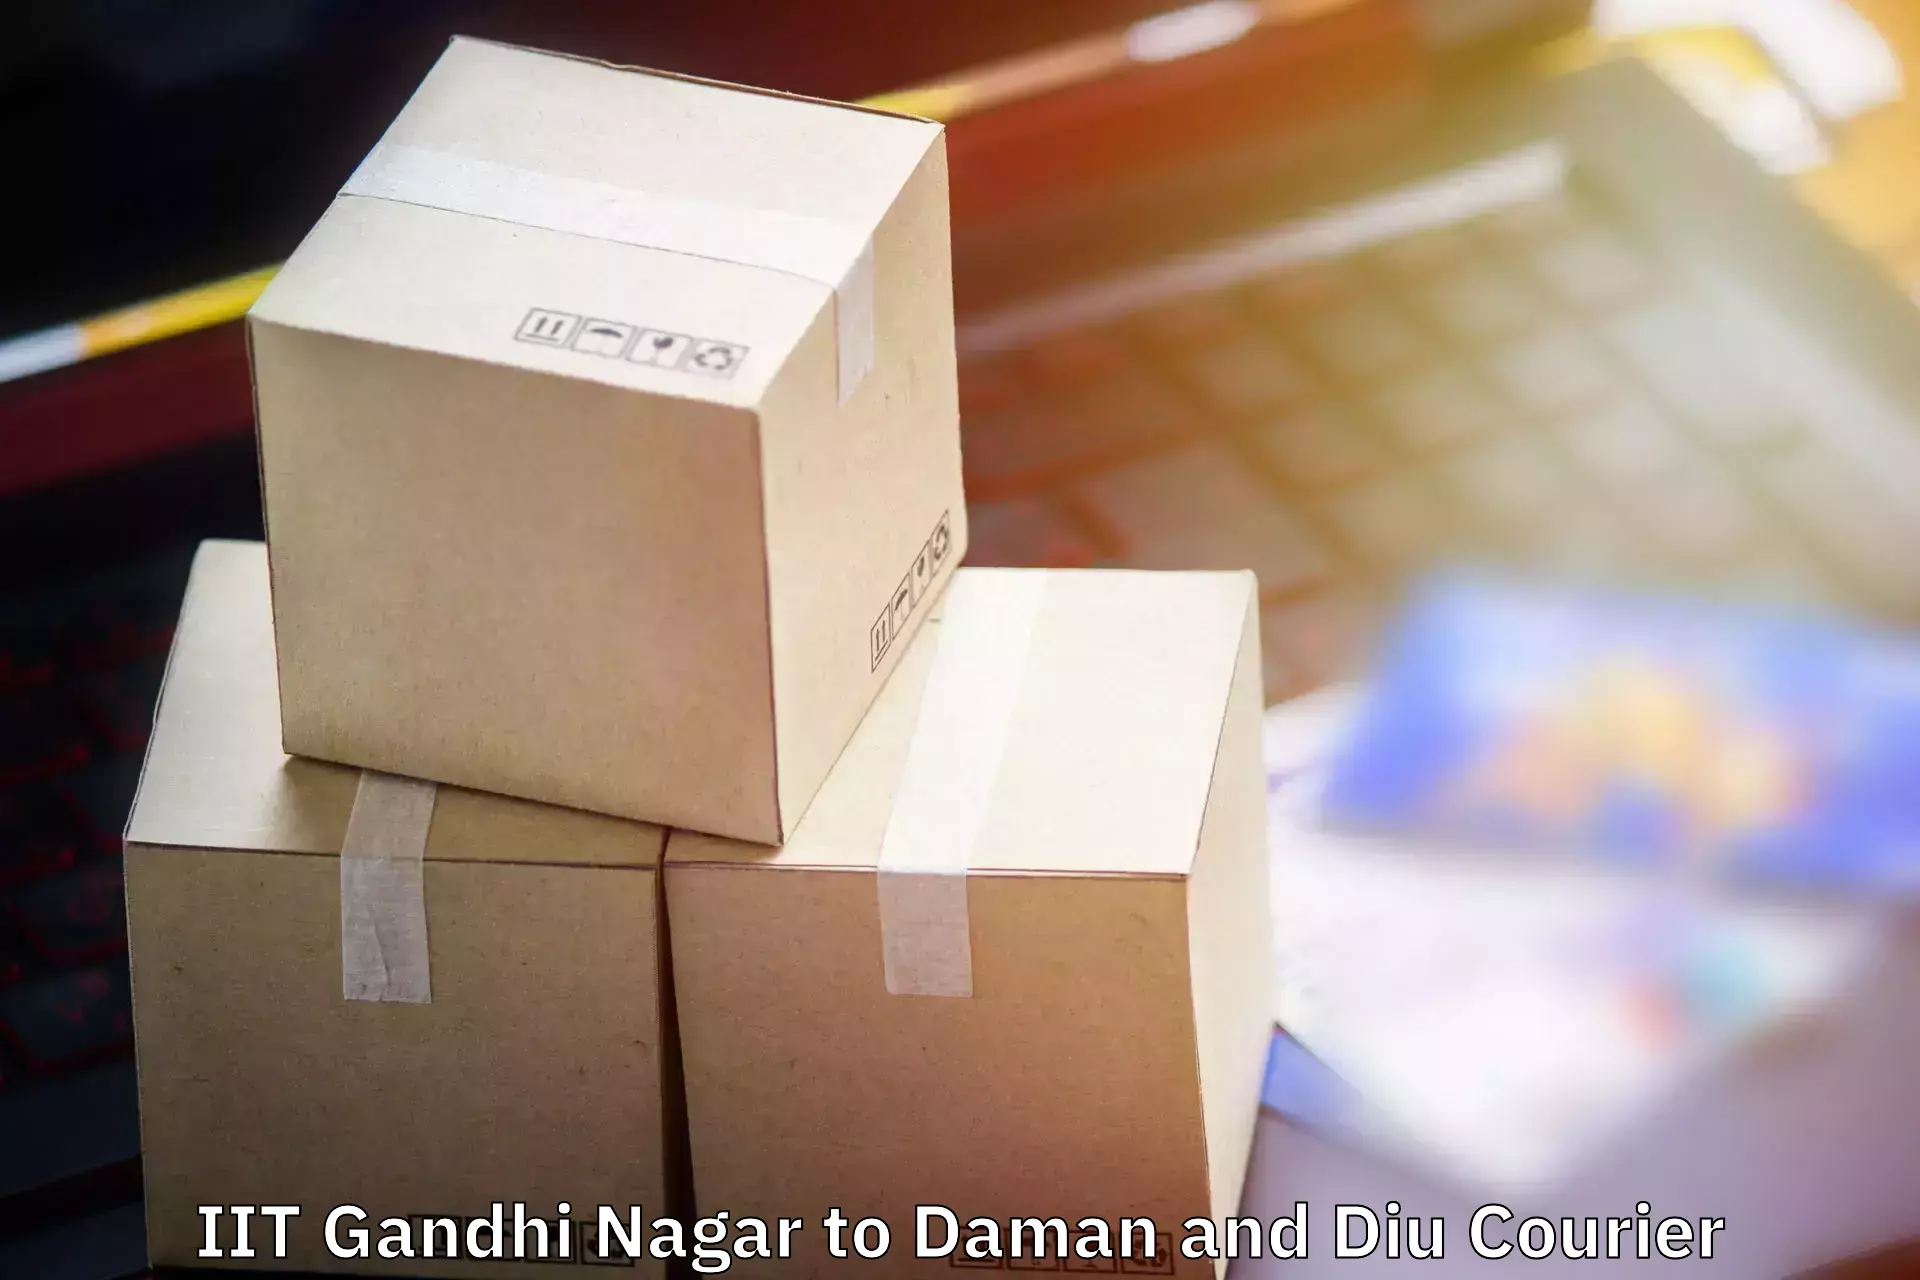 Luggage transfer service IIT Gandhi Nagar to Daman